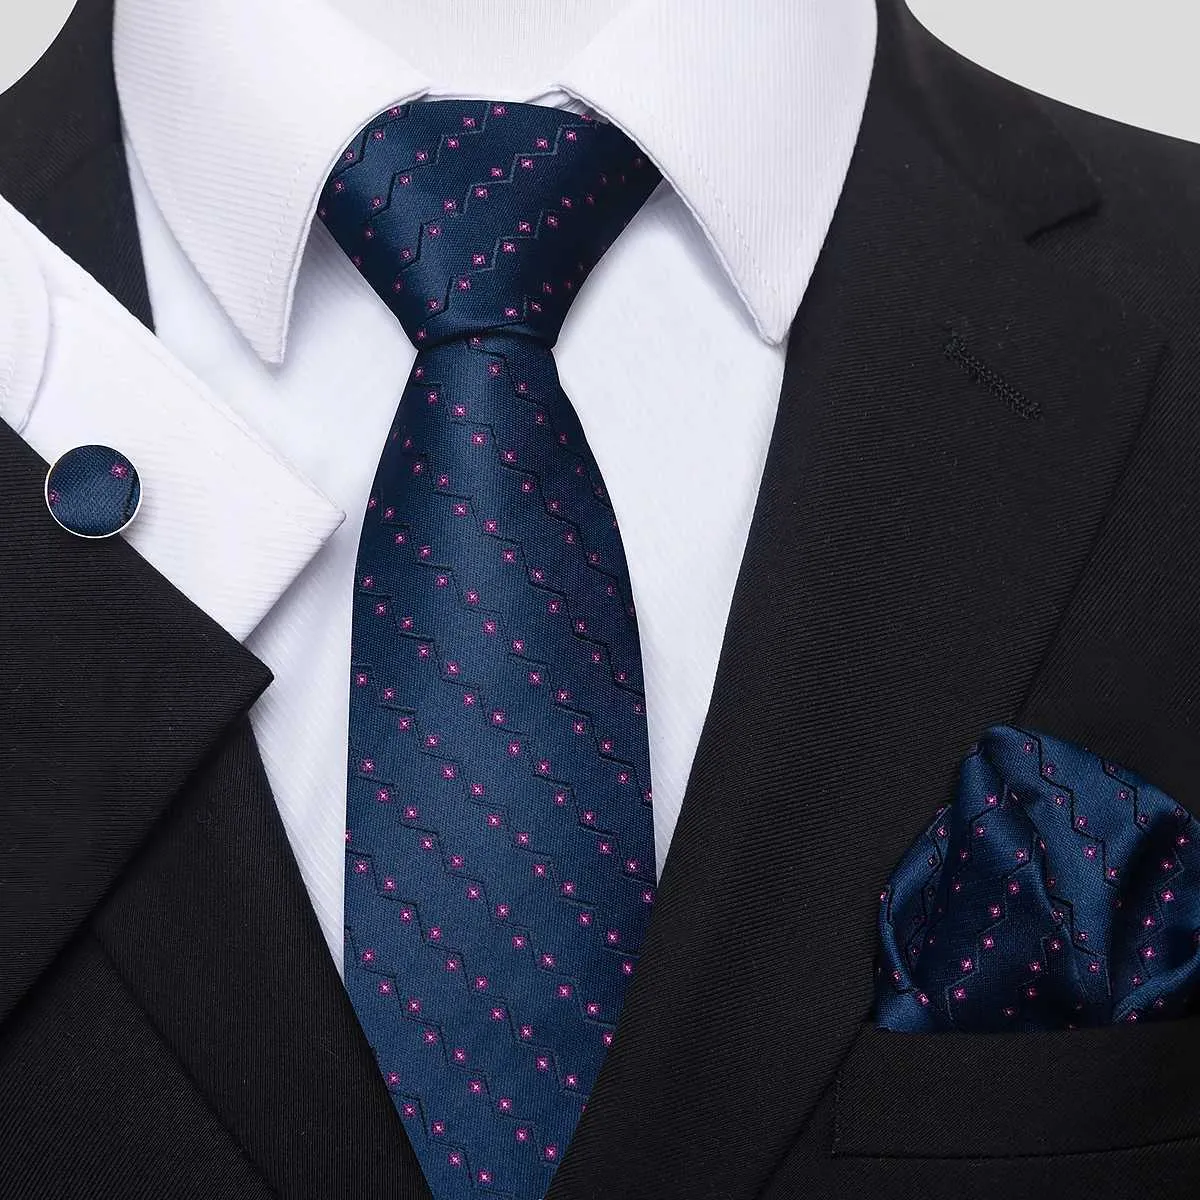 See Tie Set 100% шелковая галстука платка карманные квадраты запонки для мужчин для мужчин голубые аксессуары для одежды.